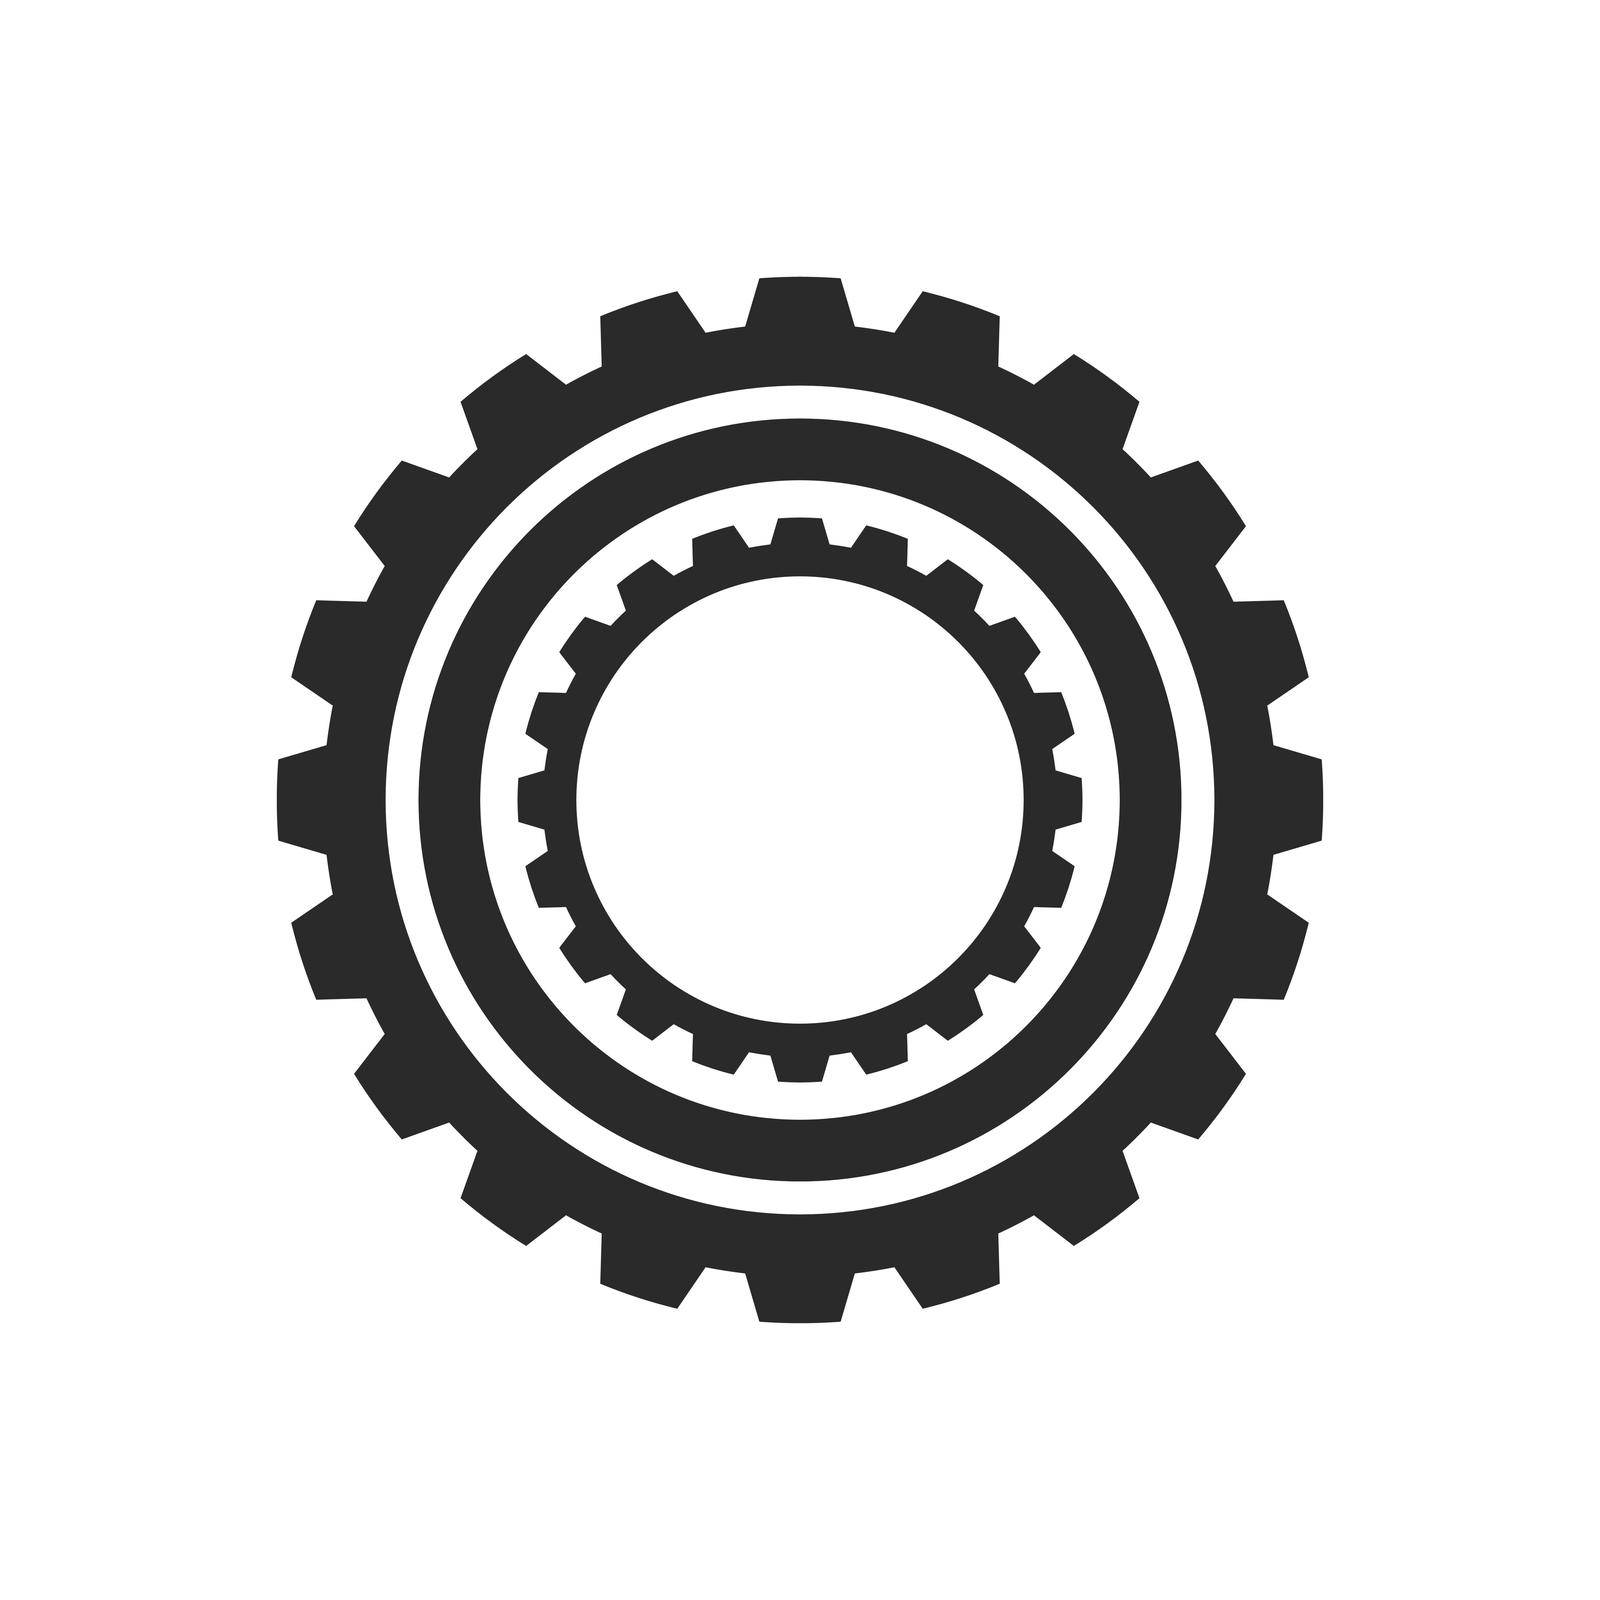 Gear logo icon vector by awk